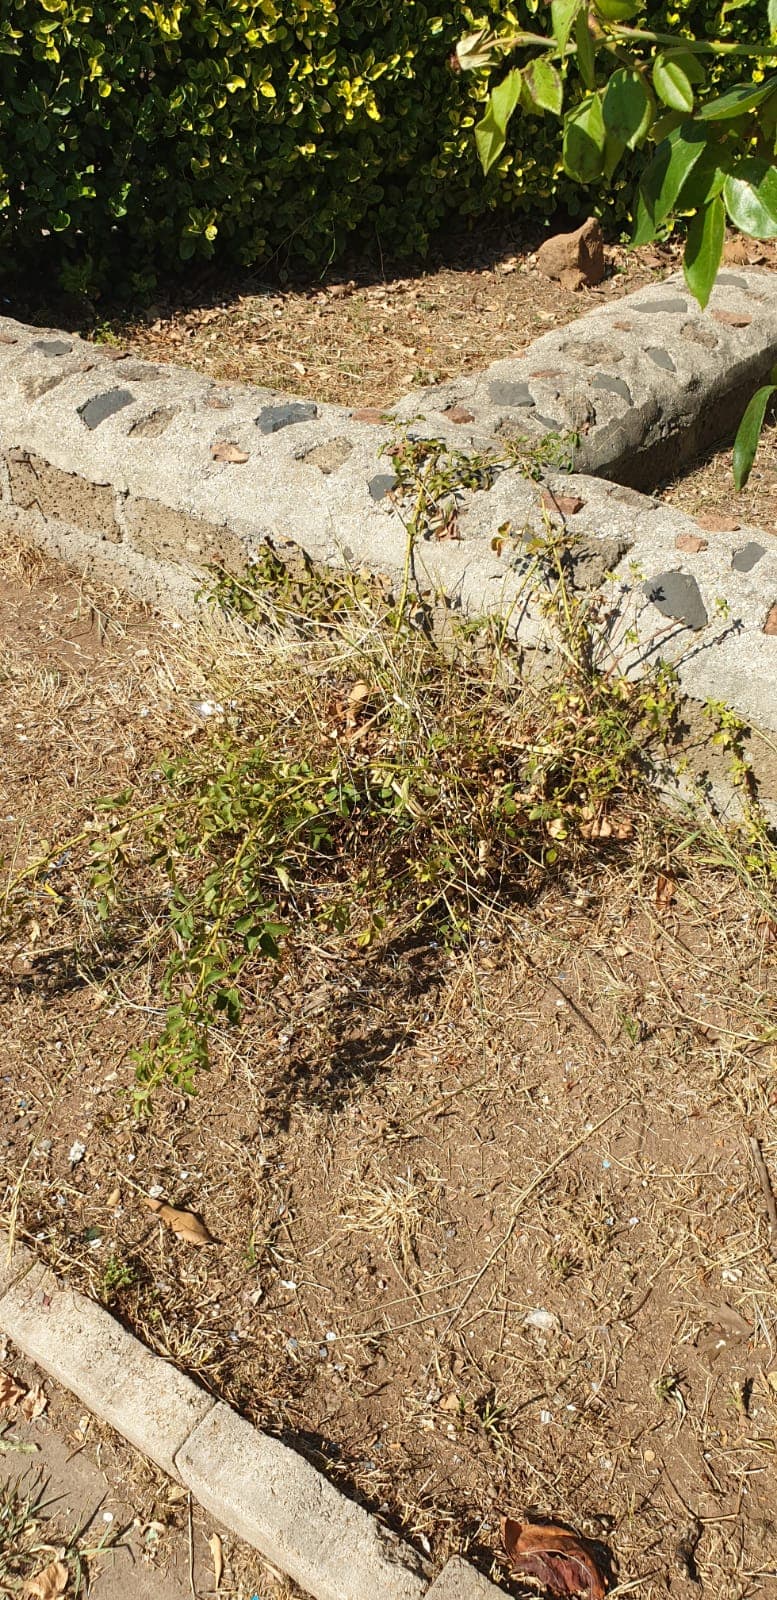 Persino le rose, piante resistentissime, stanno morendo di siccità nel Parco Renoglio